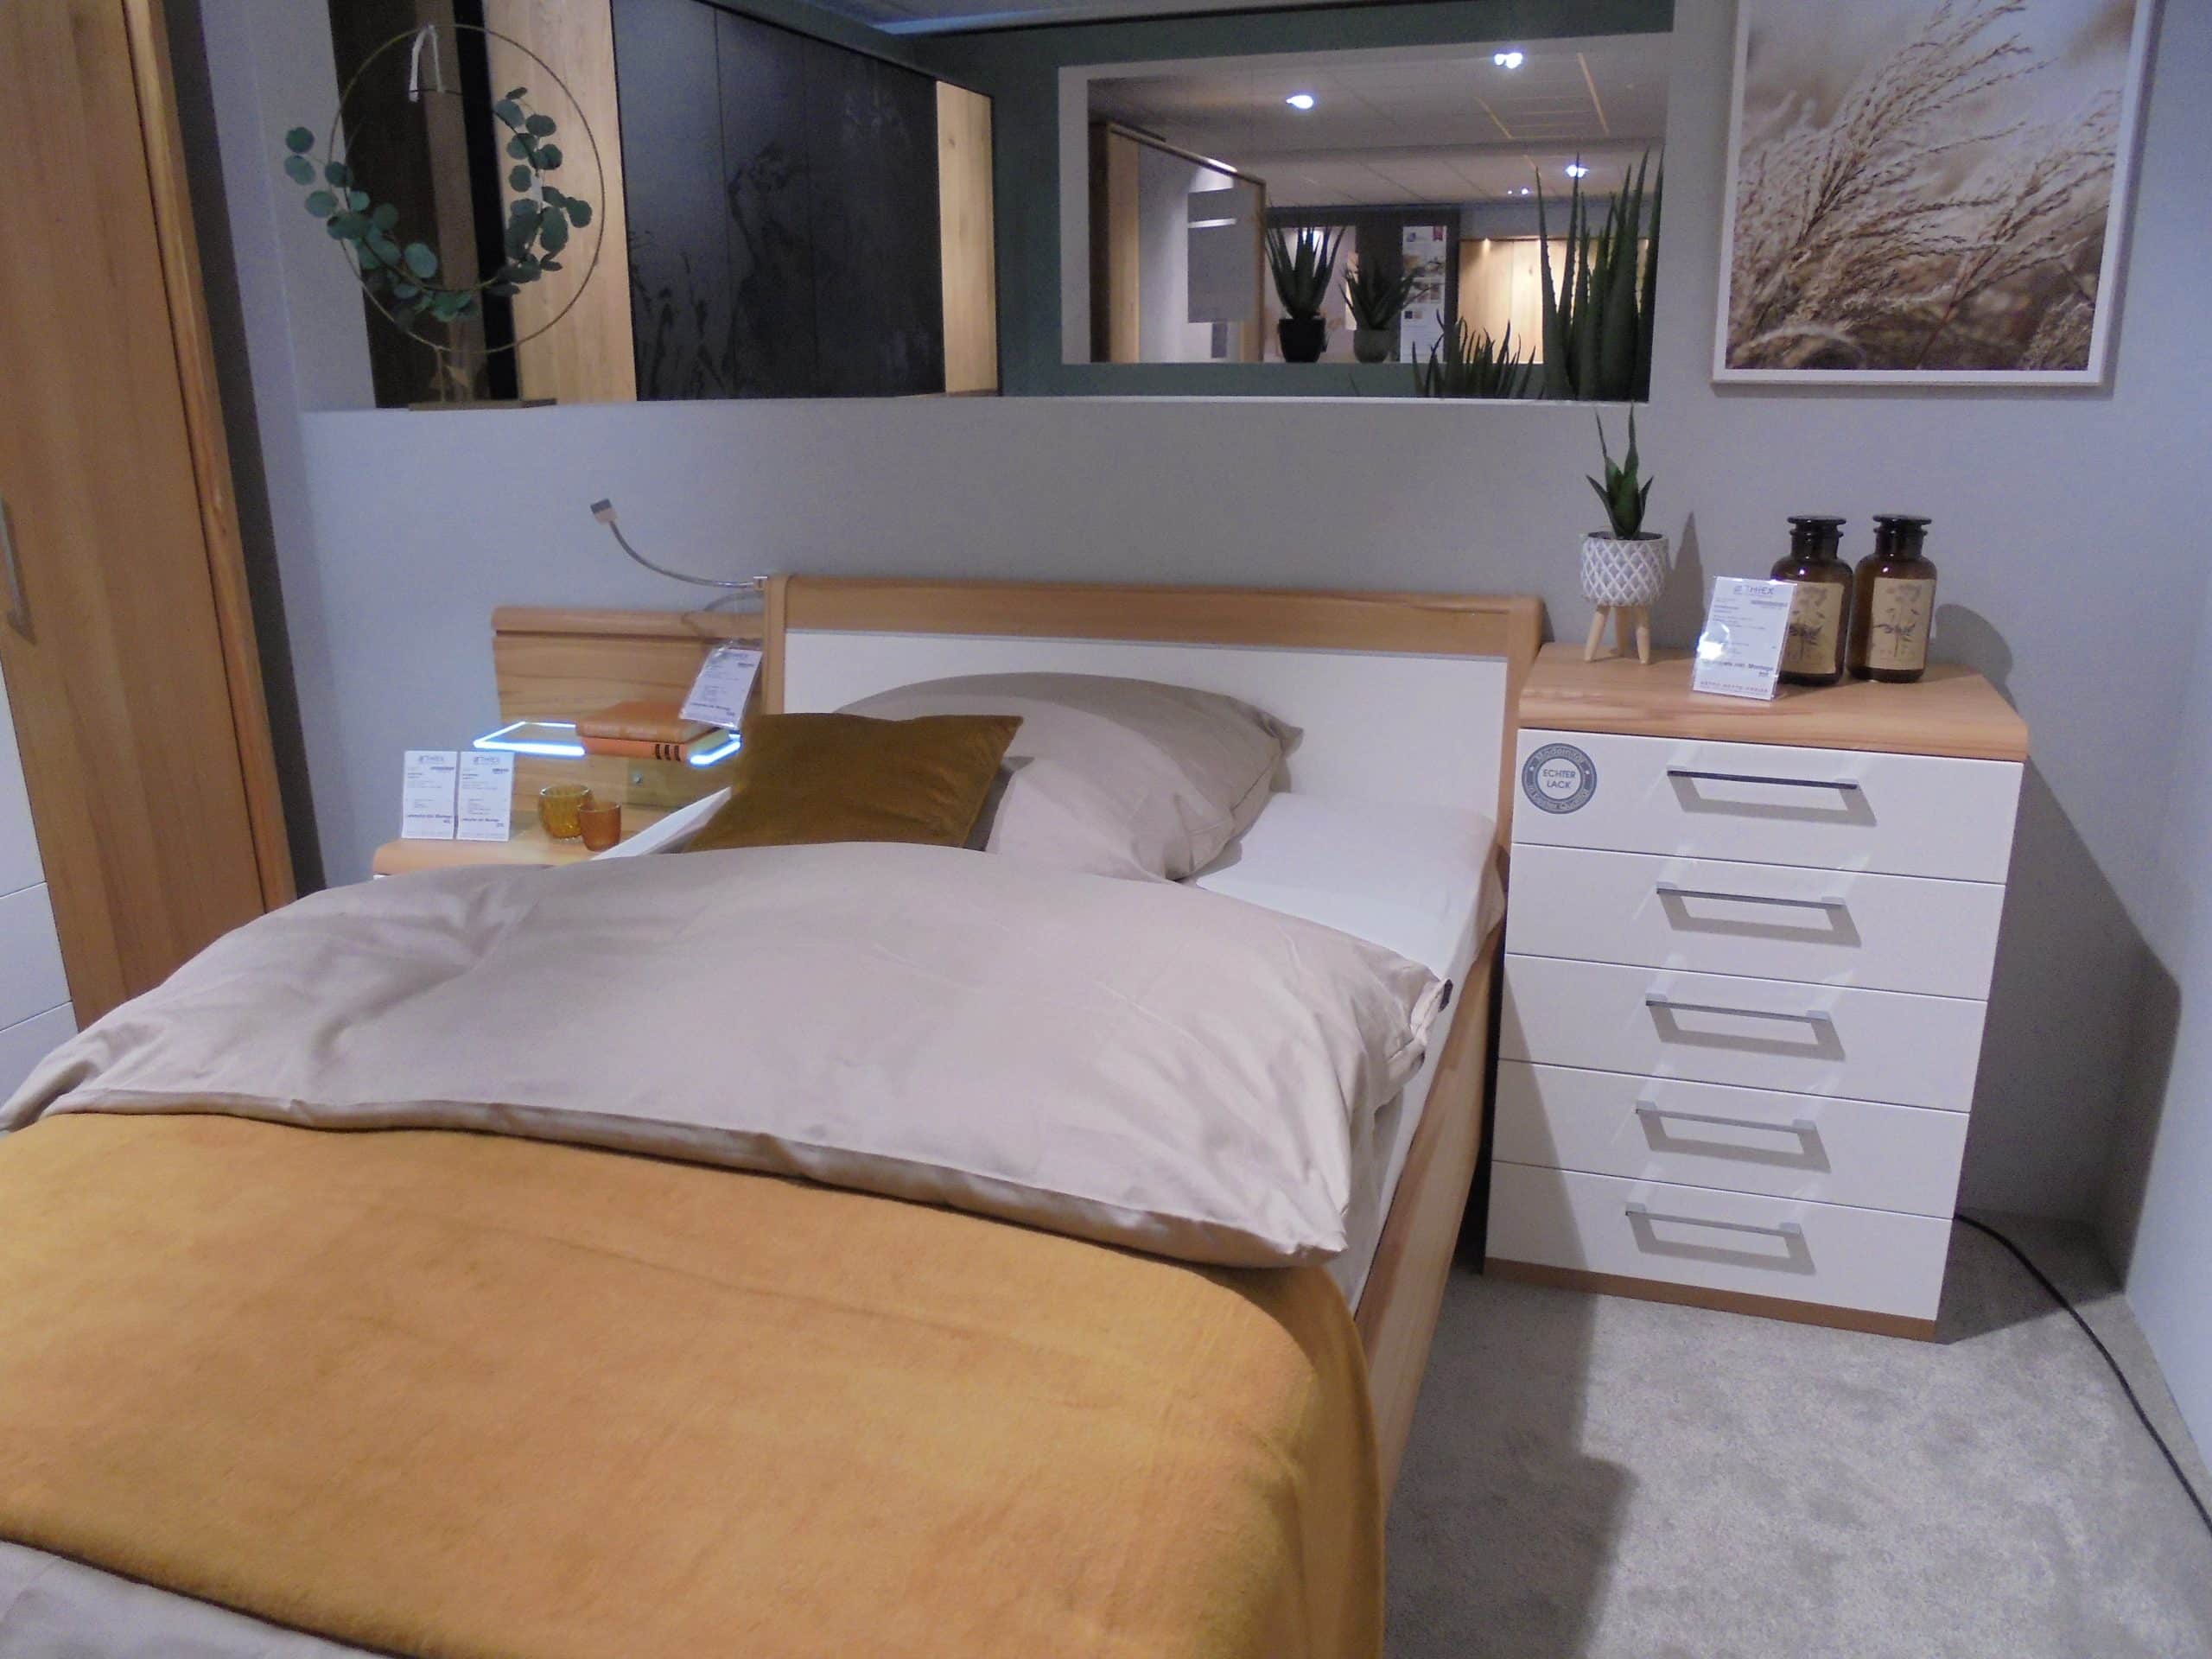 Schlafzimmer Comfort-V in Kernbuche Echtholz furniert/Lack weiß bei Möbelhaus Thiex im Abverkauf um über 30 % reduziert.